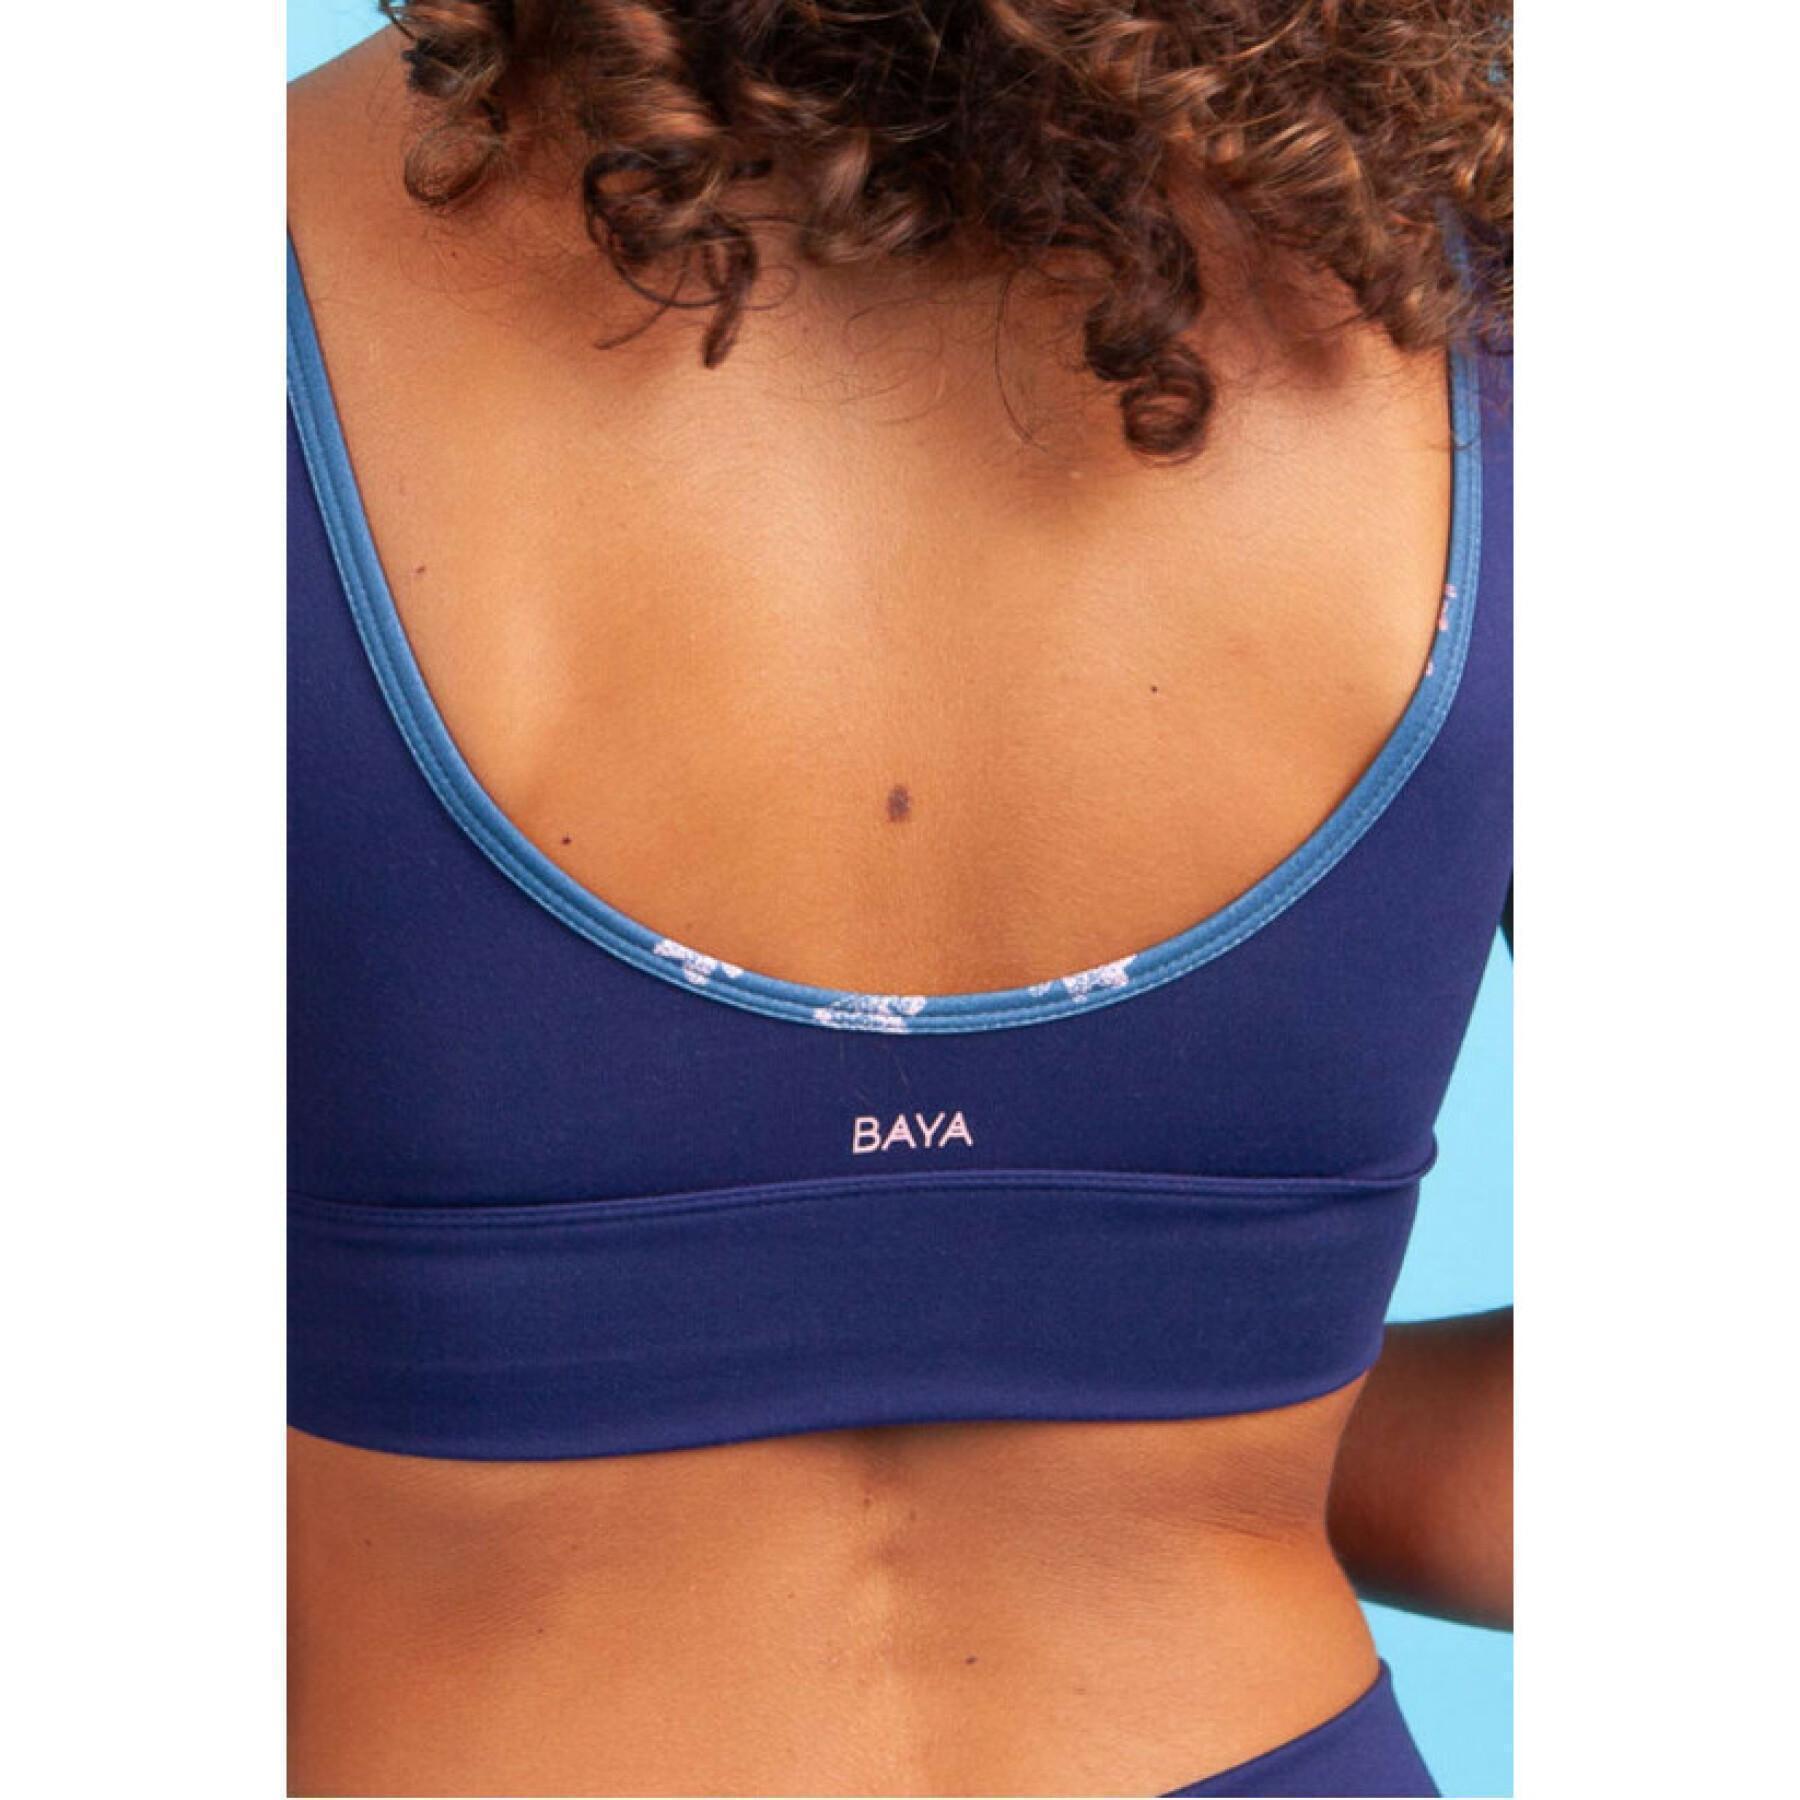 Women's bra Baya utta Aqua